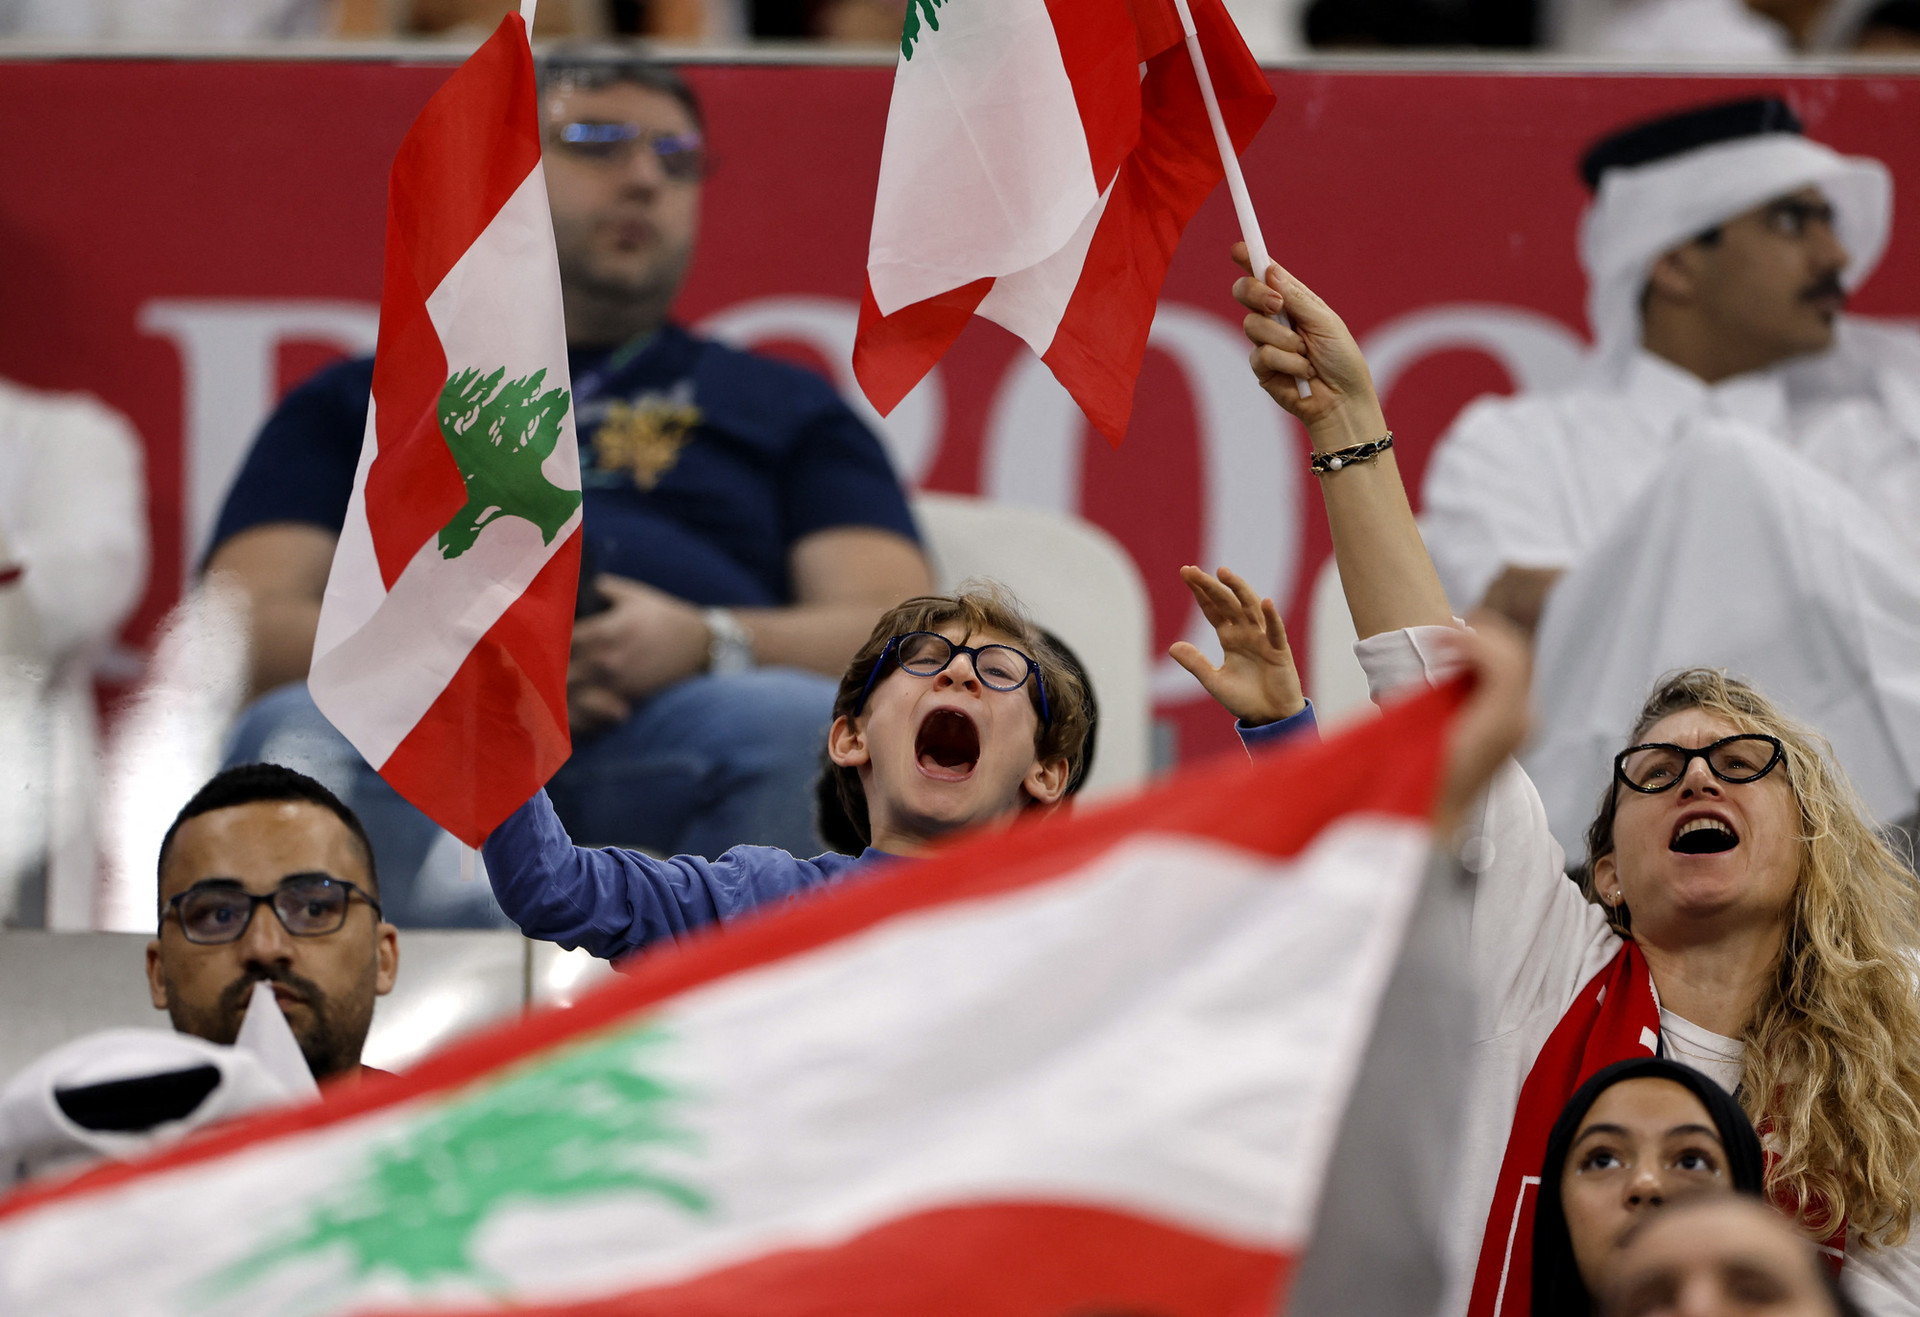 Asian Cup 2023 sẽ có 51 trận đấu, khai mạc bằng màn đọ sức giữa Qatar và Lebanon. Có 6.000 tình nguyện viên đã được huy động để hỗ trợ ban tổ chức. Tính đến hết ngày 10-1, đã có hơn 900.000 vé được bán ra. Asian Cup 2023 được phát sóng trên truyền hình 160 quốc gia. Đây là con số kỷ lục trong lịch sử giải đấu - Ảnh: REUTERS